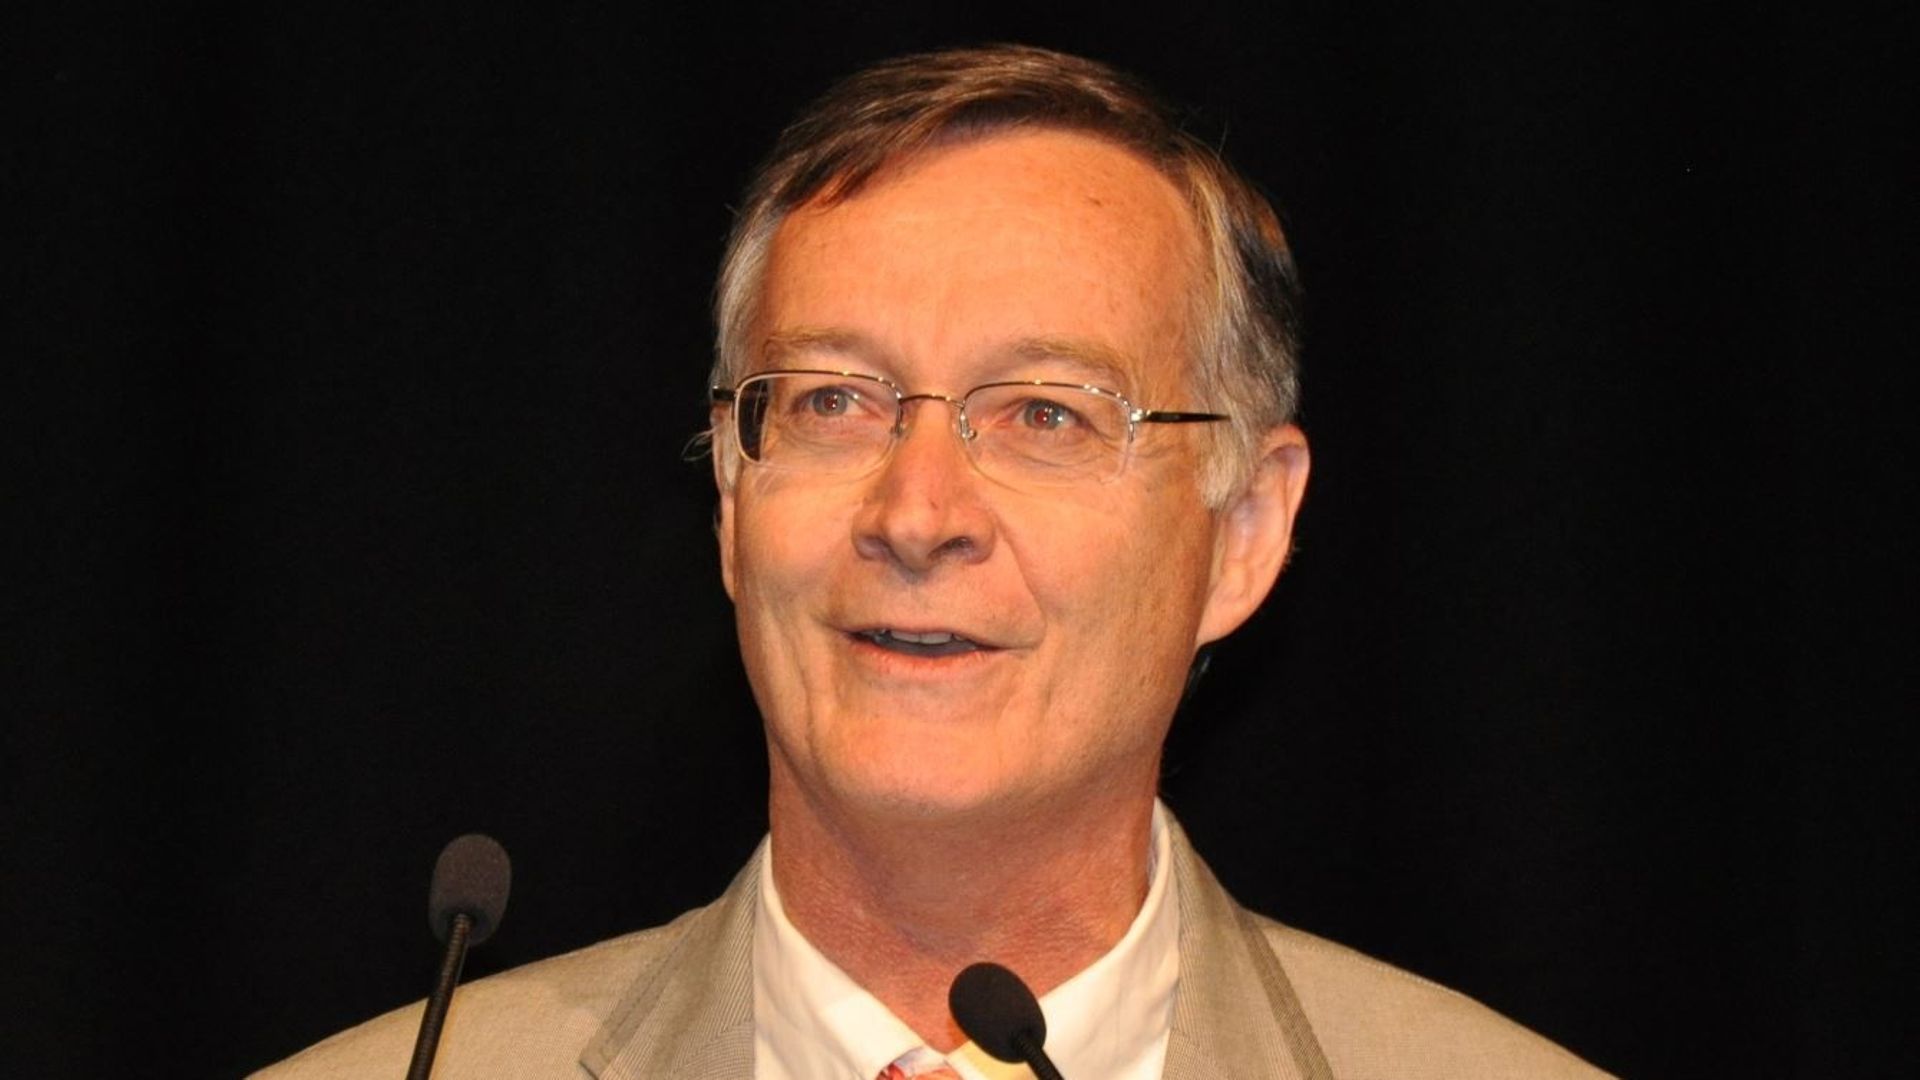 Antoine Flahault, épidémiologiste, directeur de l’Institut de santé globale à la faculté de médecine de l'université de Genève.